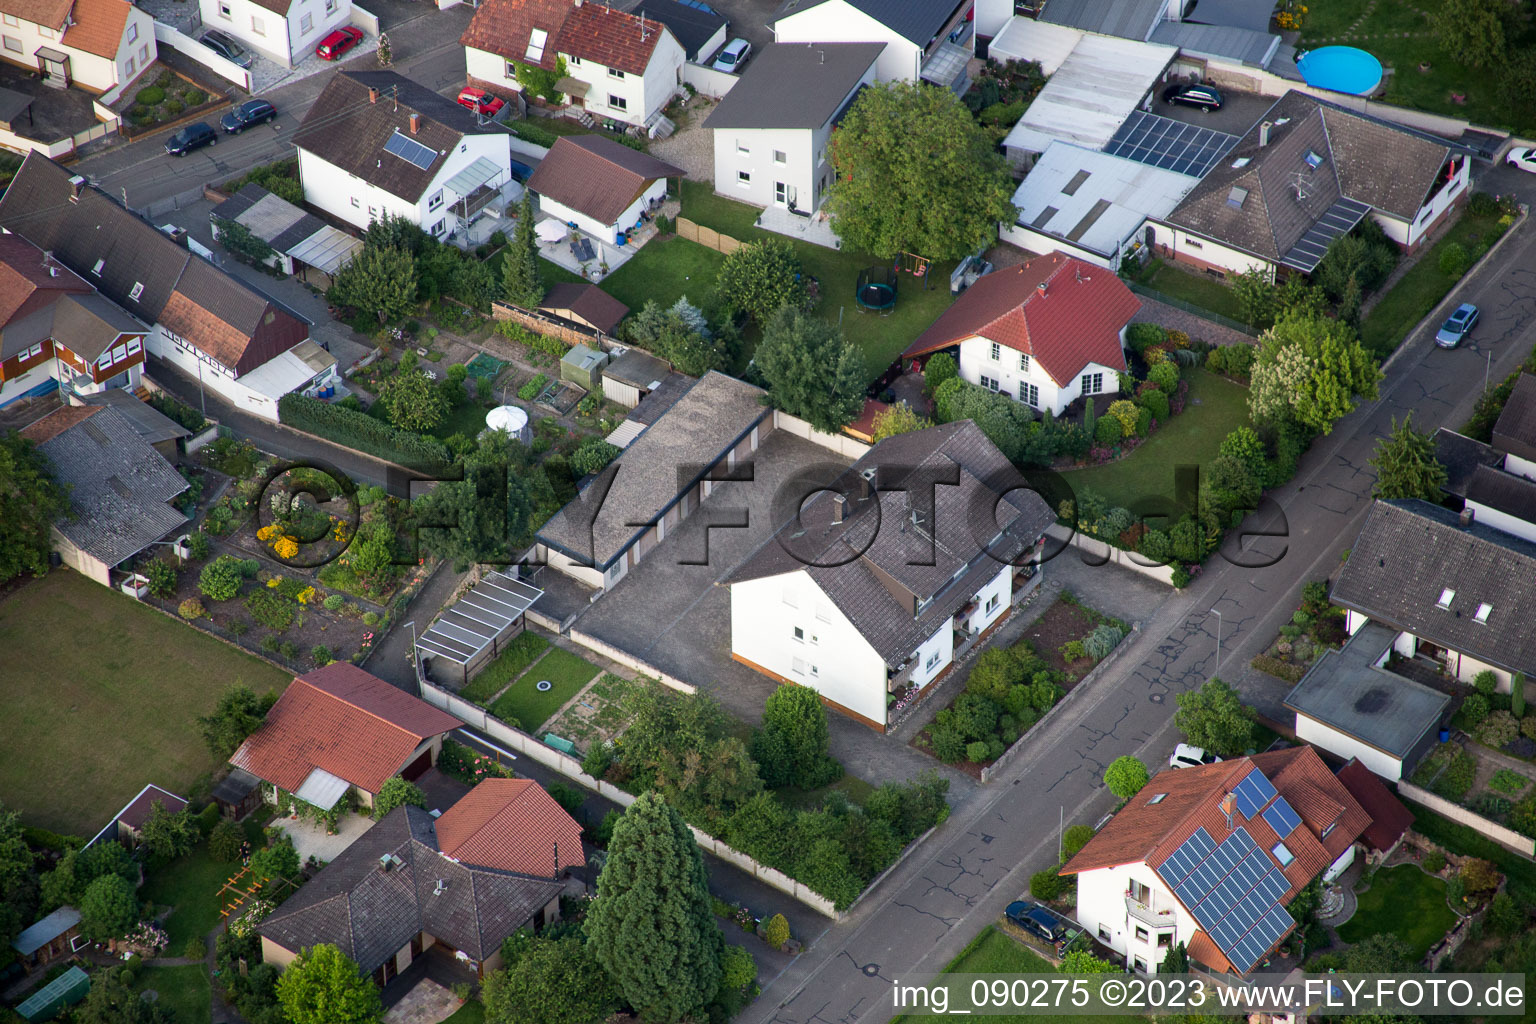 Drohnenbild von Minfeld im Bundesland Rheinland-Pfalz, Deutschland